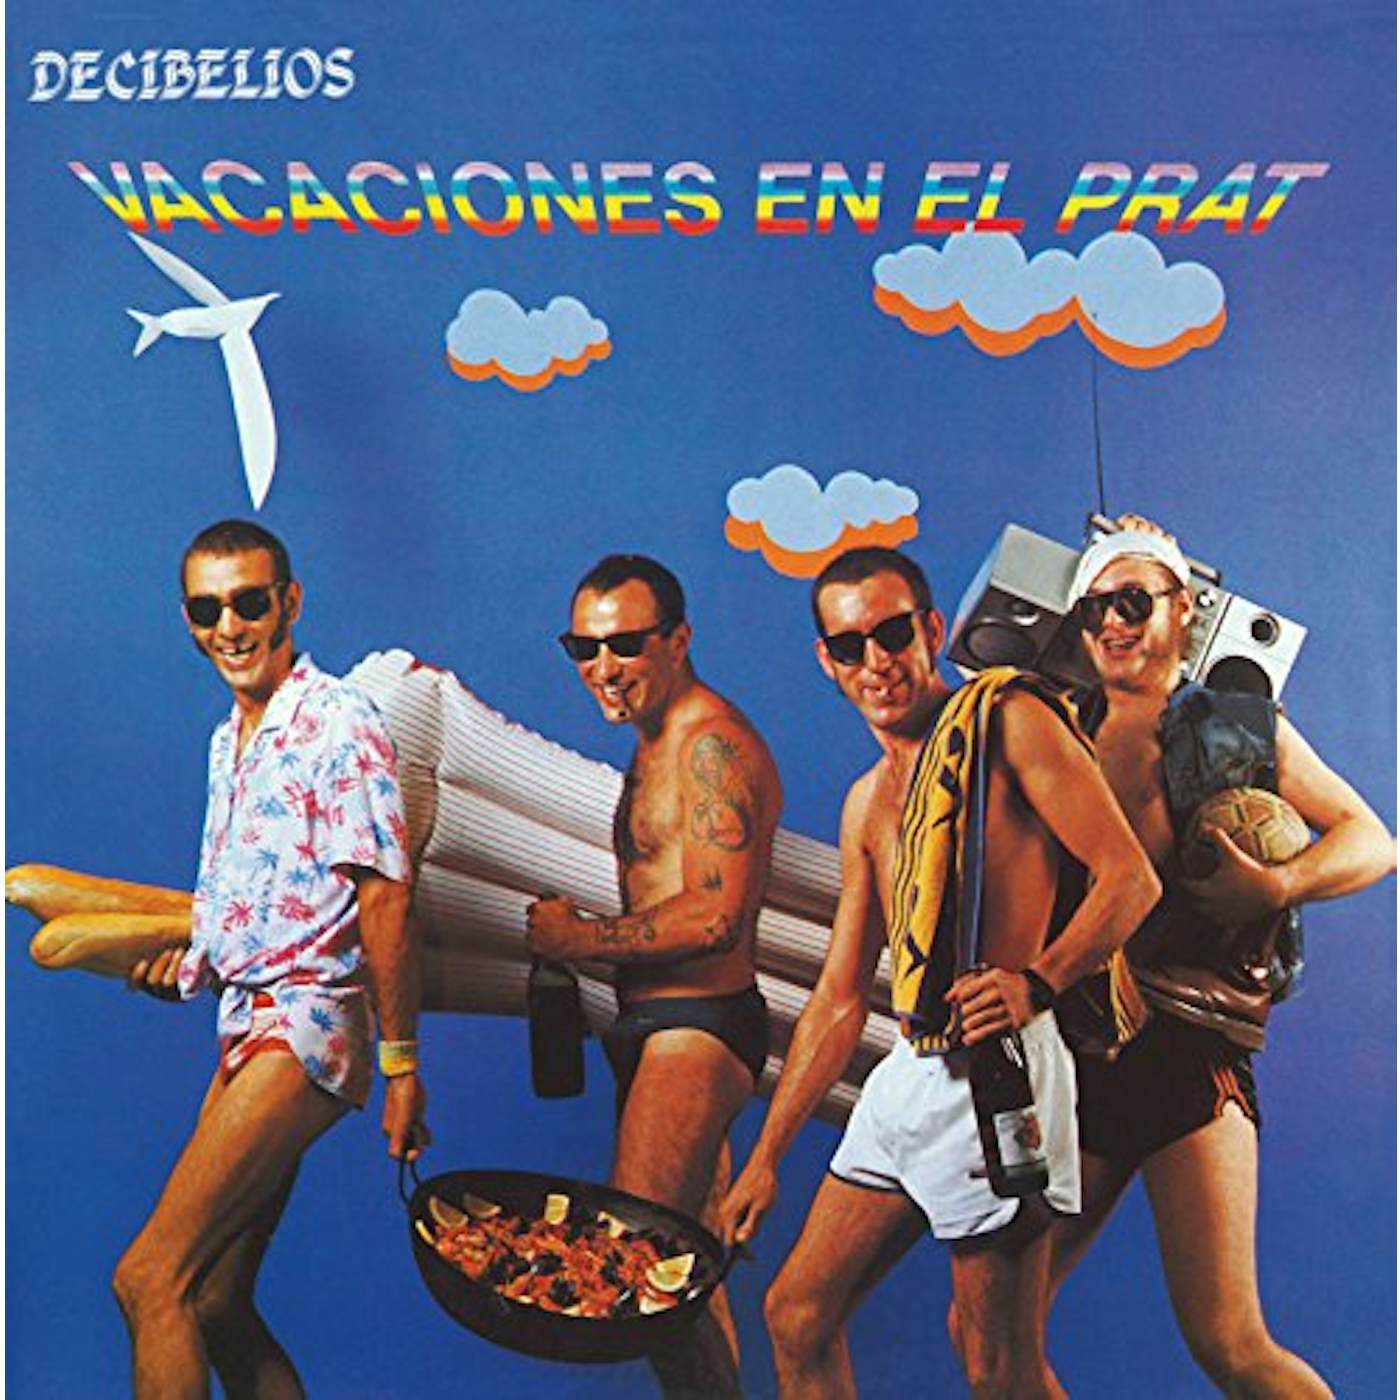 Decibelios Vacaciones En El Prat Vinyl Record